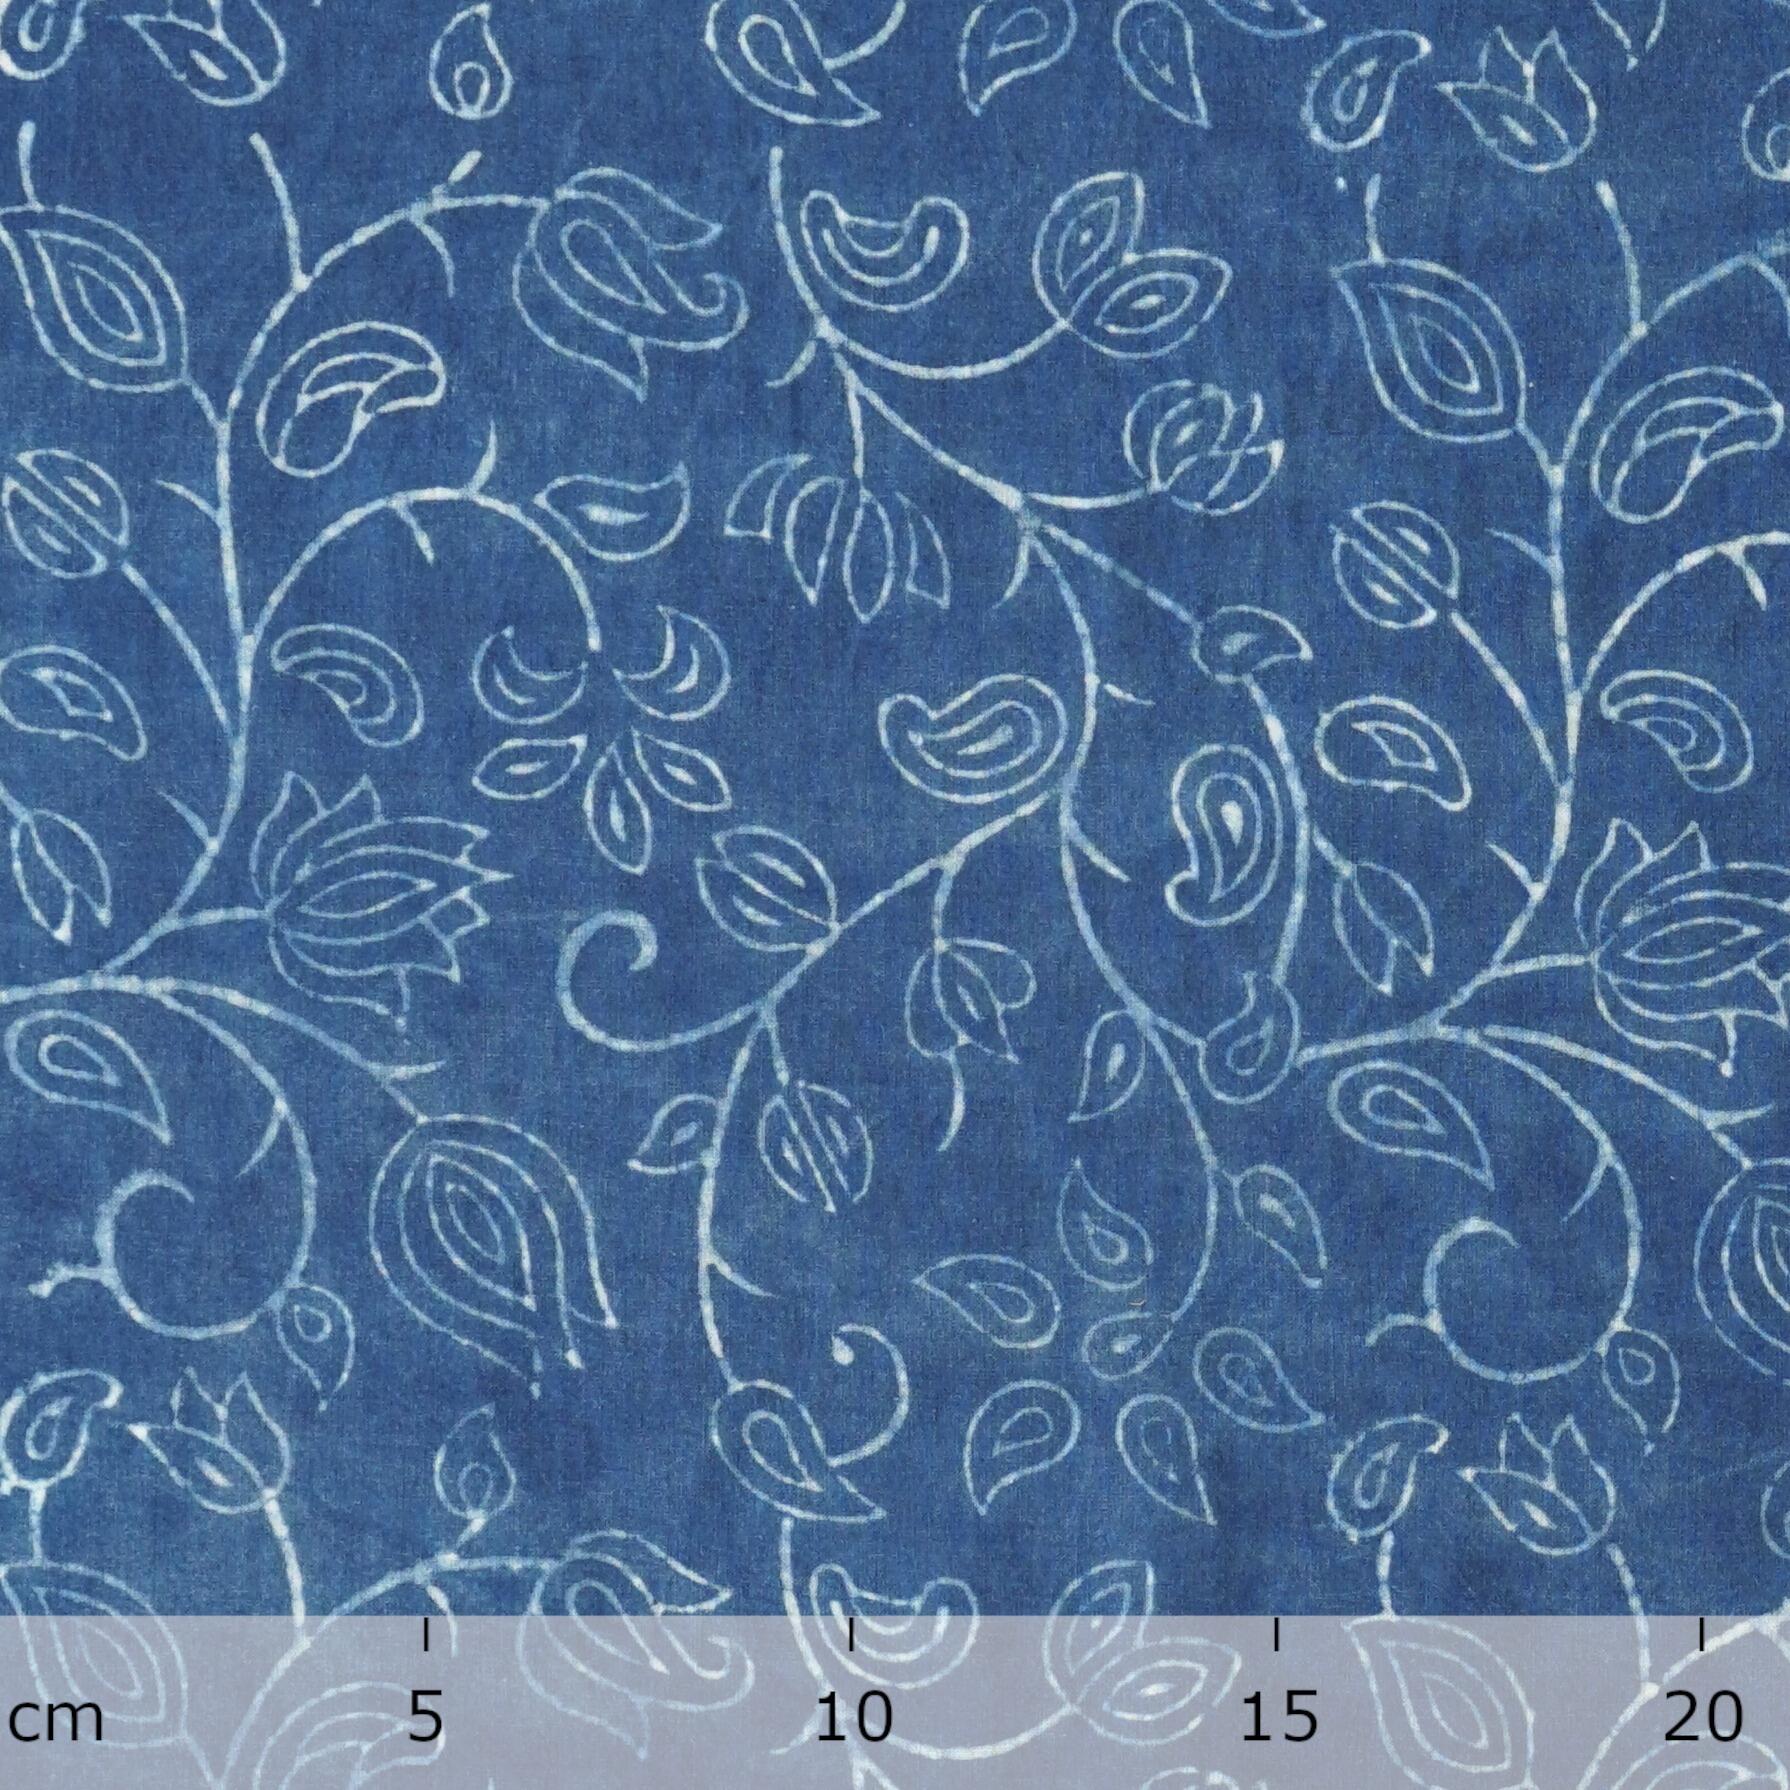 Block-Printed Cotton - Flowering Azure Print - Indigo Dyed - Ruler